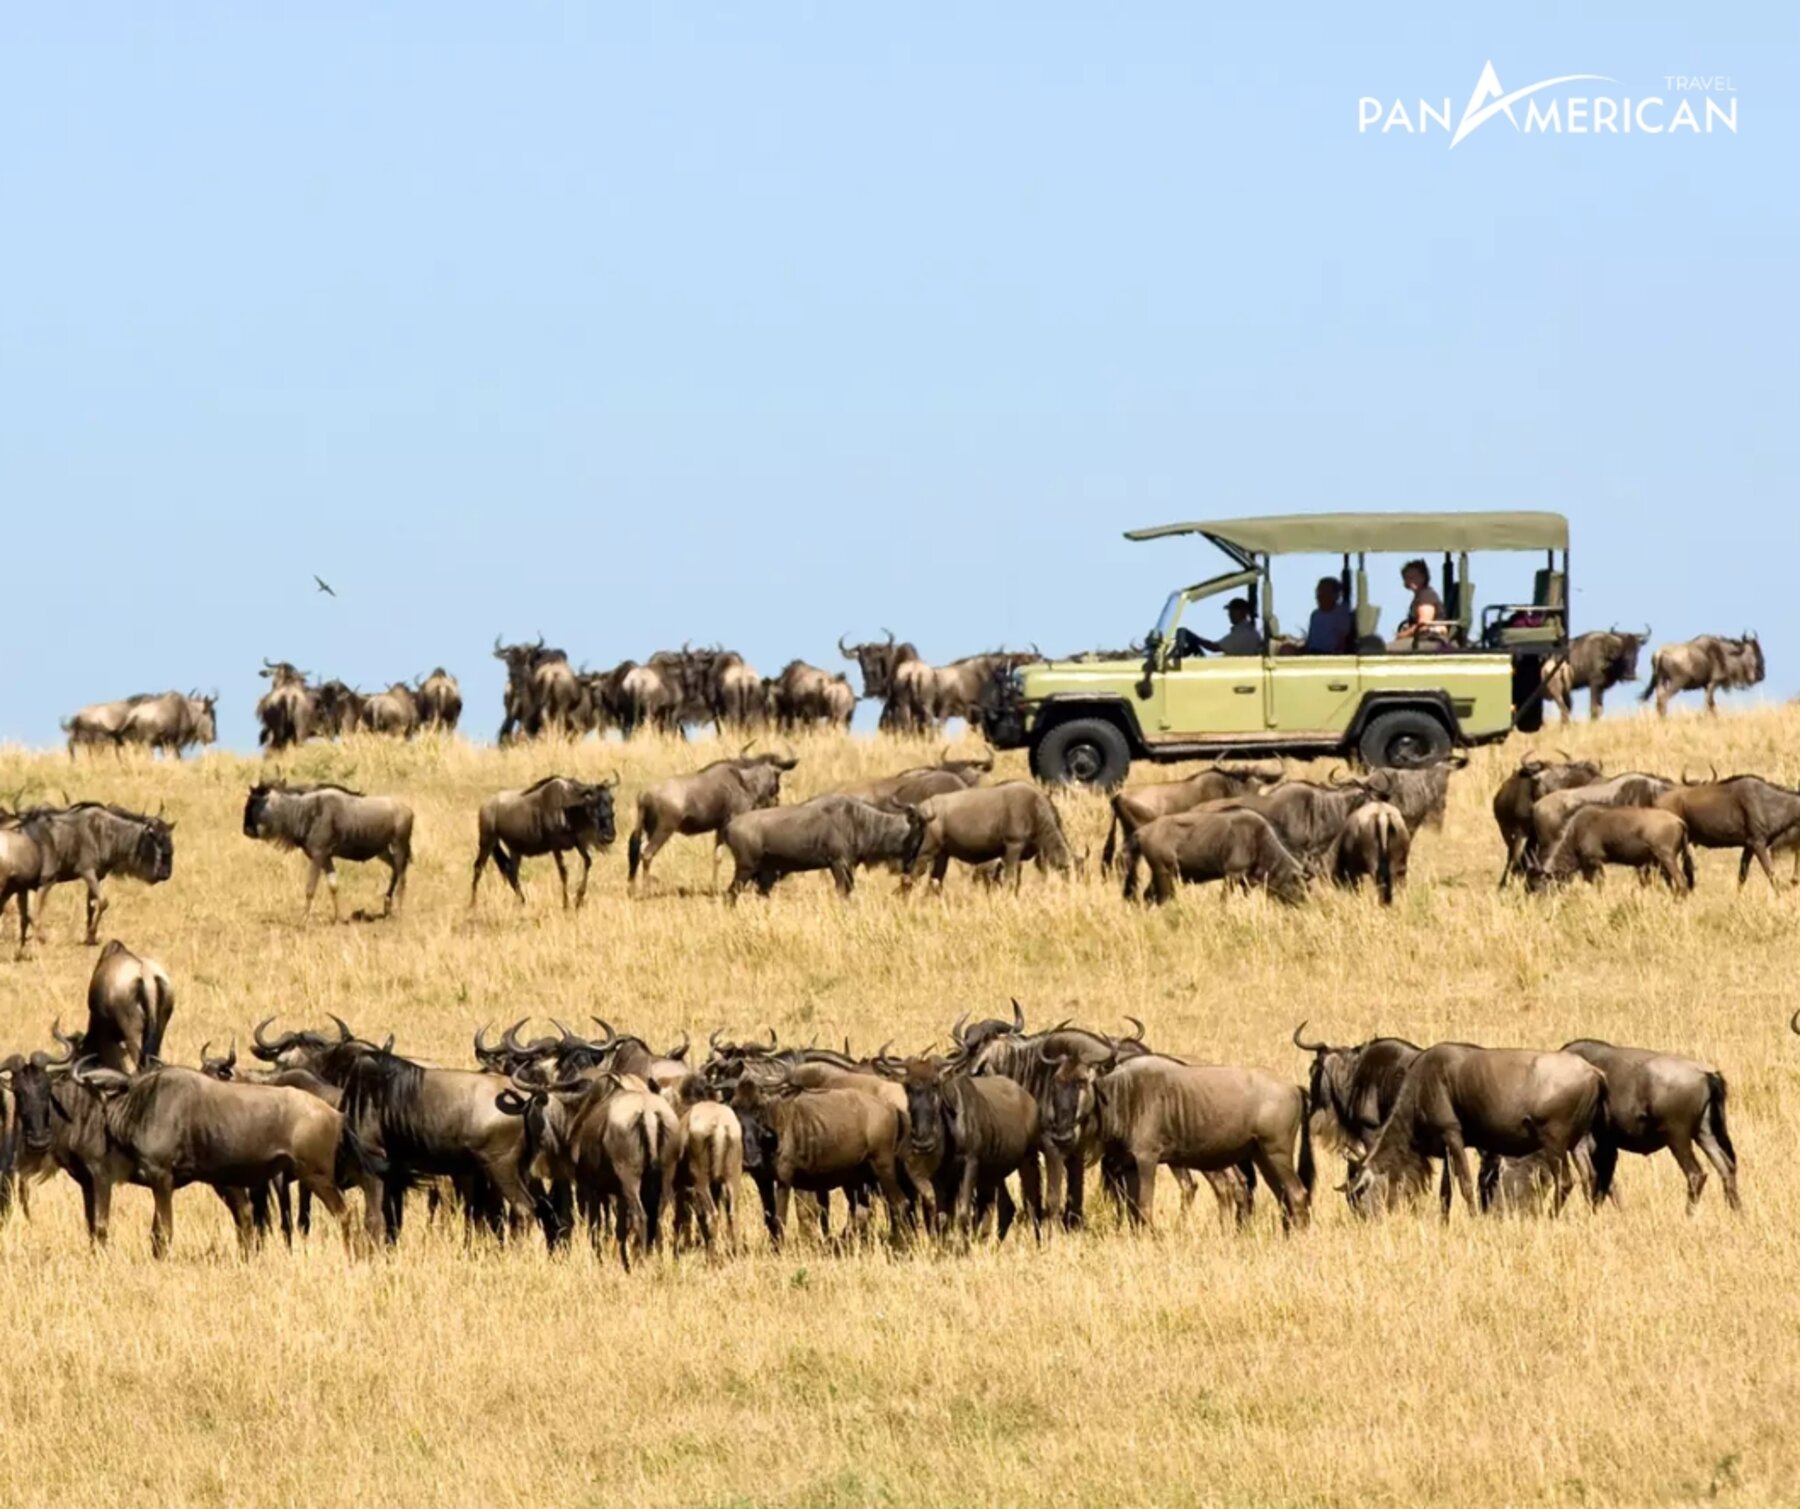 Du lịch Serengeti: 4 trải nghiệm hấp dẫn không thể bỏ lỡ tại công viên quốc gia lớn nhất Tanzania - Gallery Image